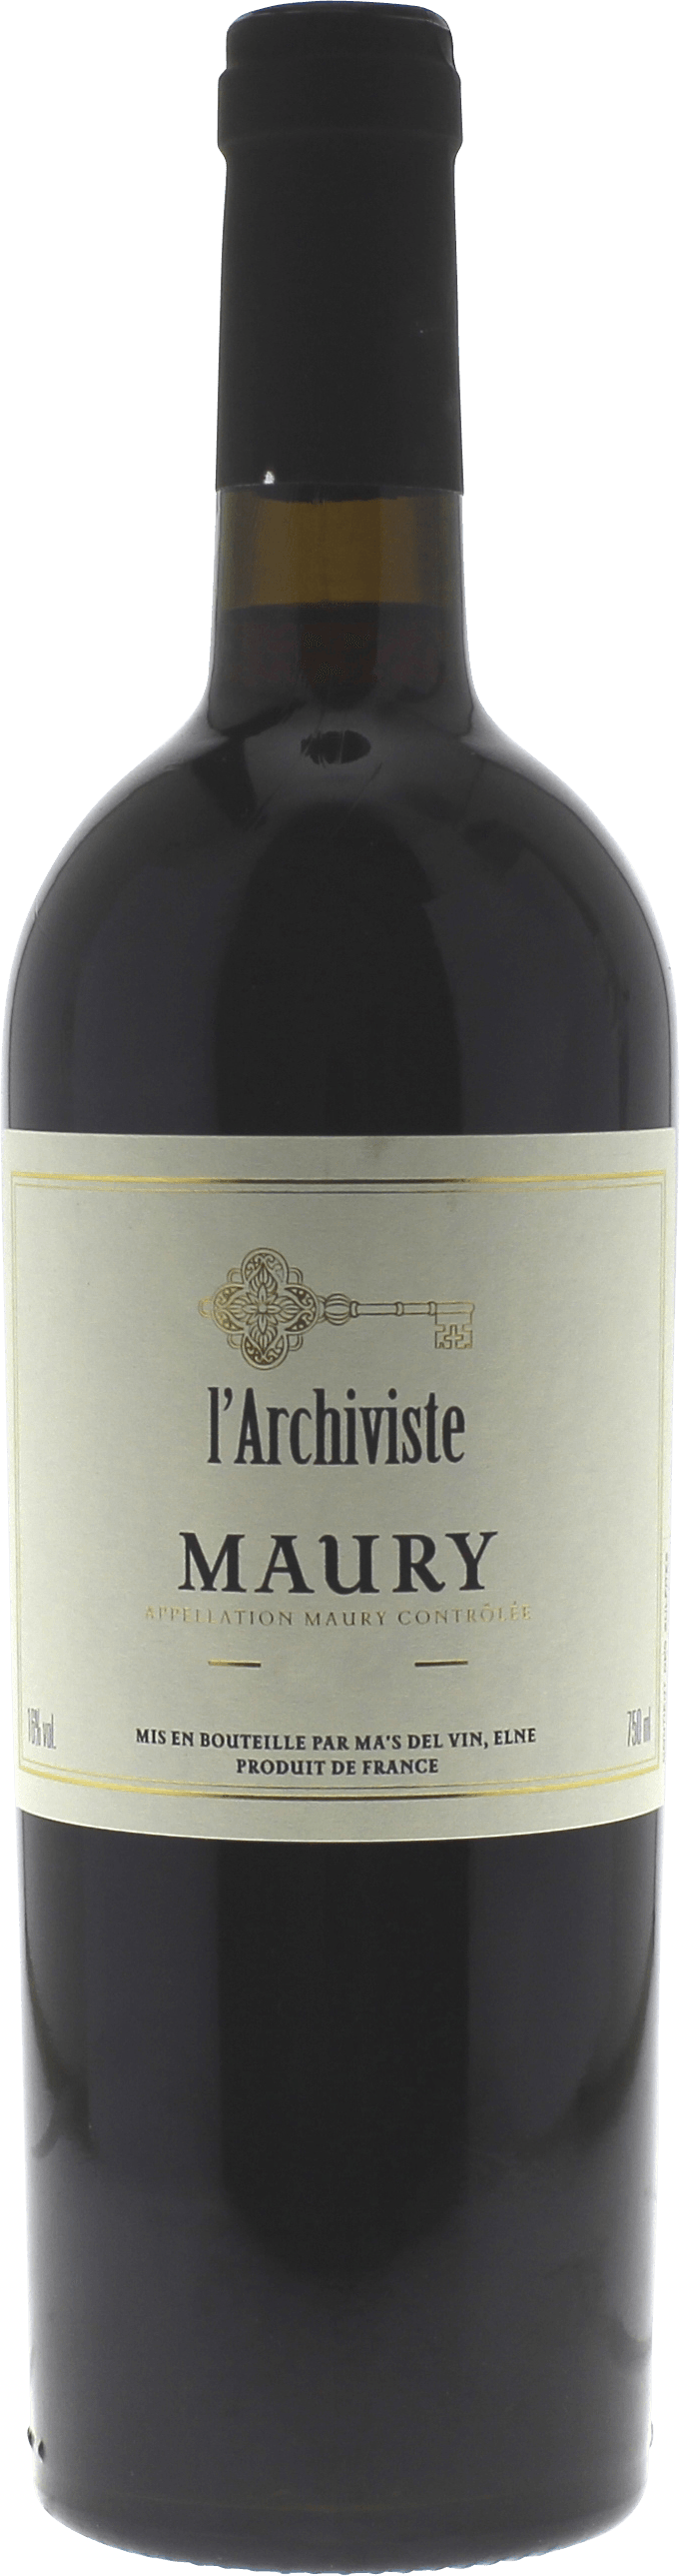 Maury l'archiviste 1978 Vin doux naturel Maury, Vin doux naturel